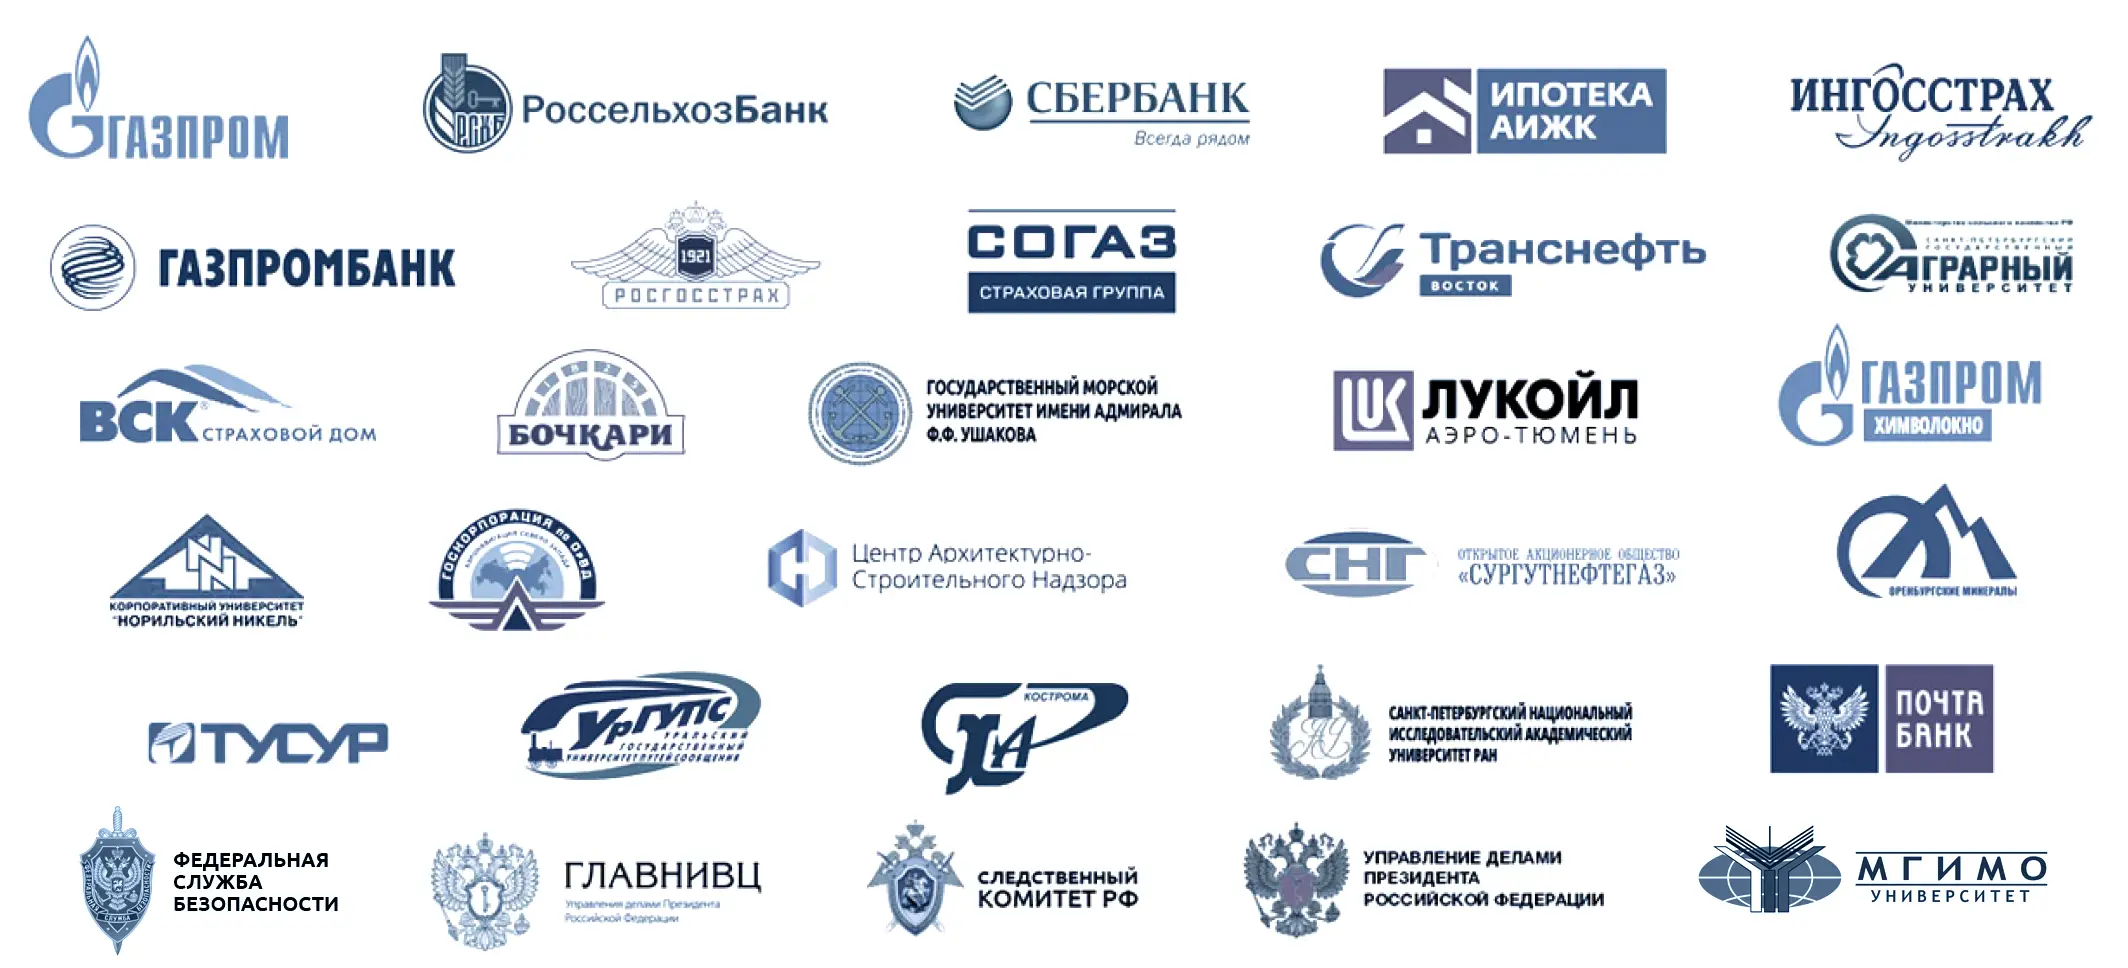 Экспертиза DPO и дистанционное обучение по лучшим ценам в России